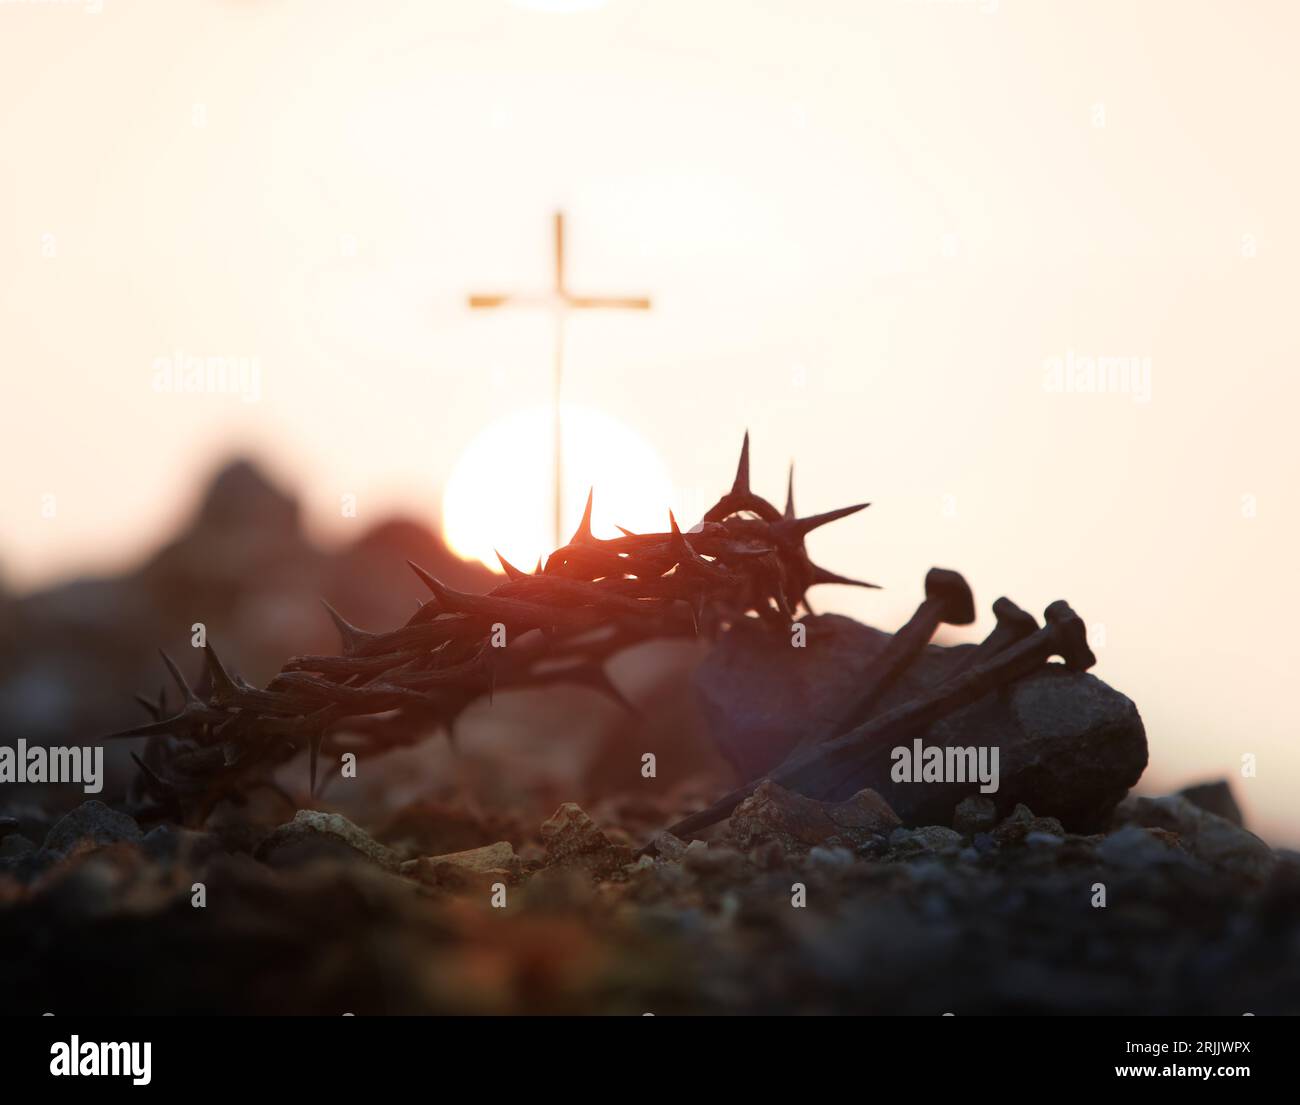 Das Kreuz, die Dornenkrone, die Nägel und der rote Sonnenuntergang symbolisieren das Opfer und das Leiden von Jesus Christus, die Leidenswoche und das Konzept der Leihgabe Stockfoto